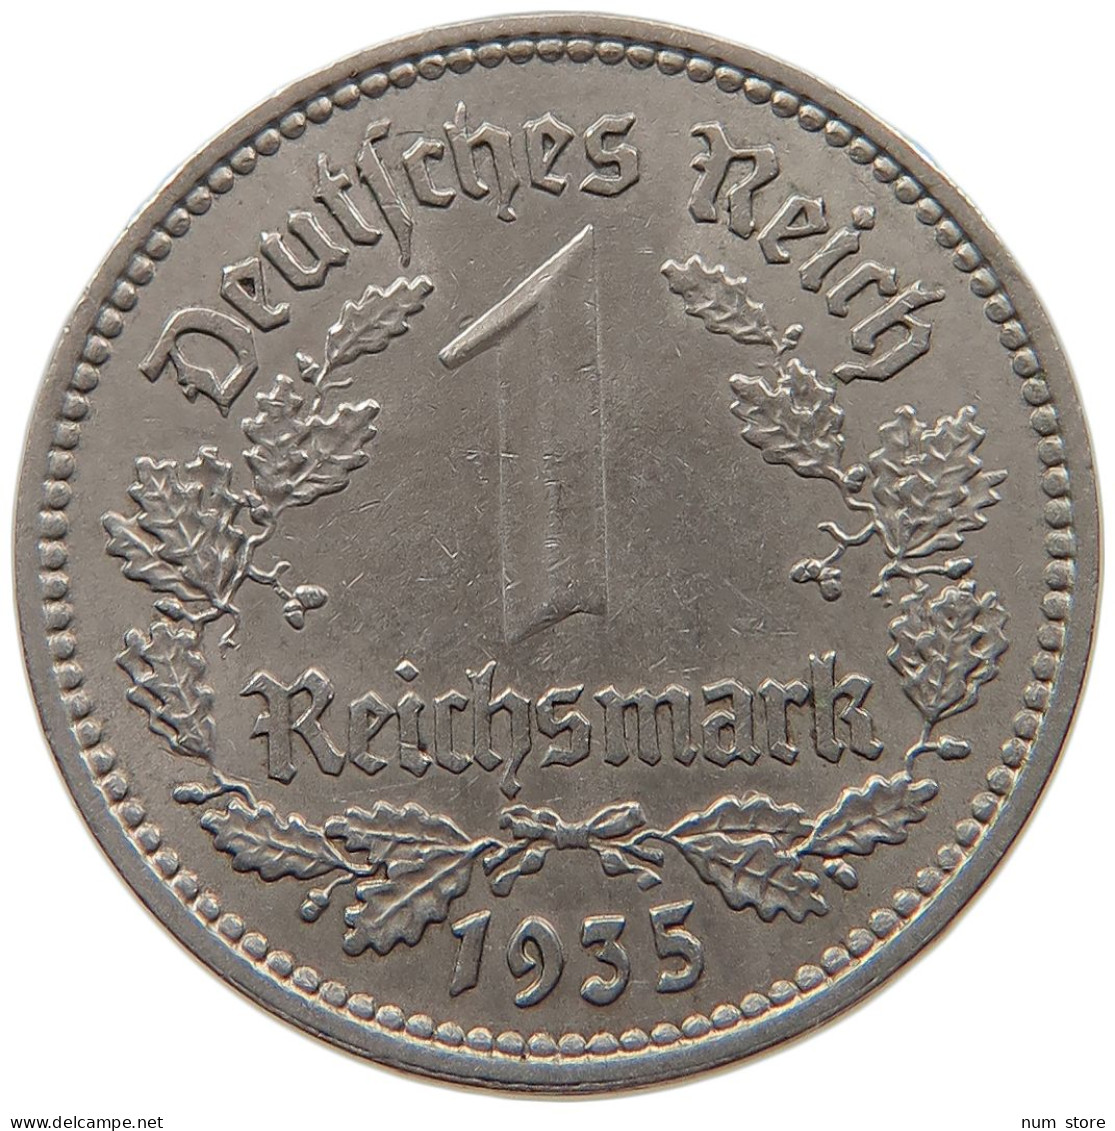 DRITTES REICH MARK 1935 A  #MA 099344 - 1 Reichsmark